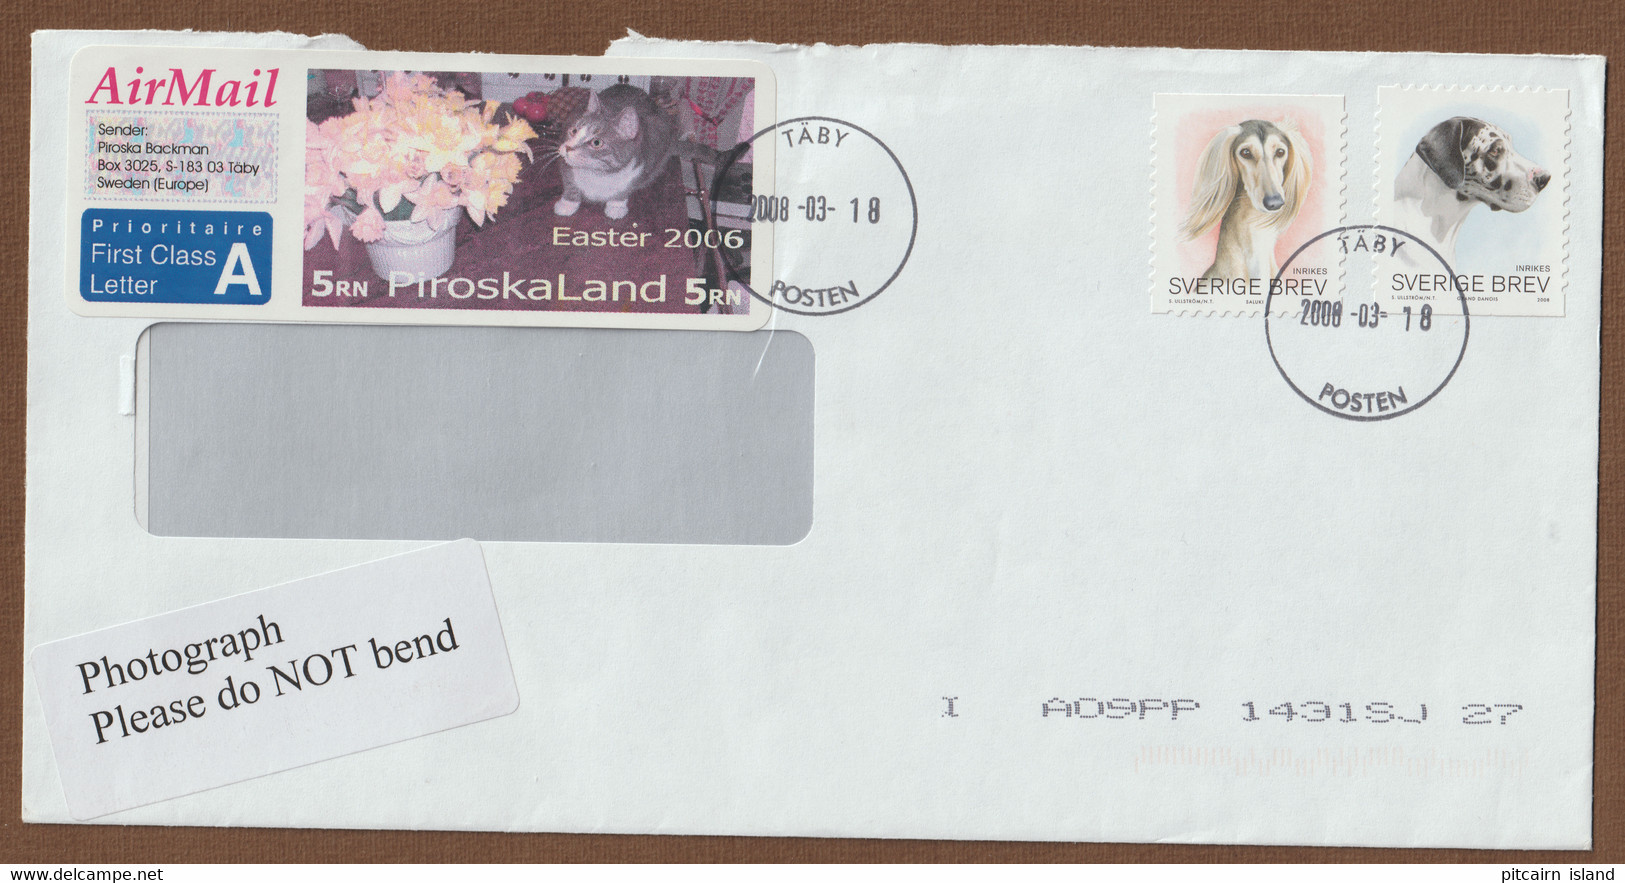 Piroskaland, Sverige Brav, Sweden Letter 2008-03-18 - Storia Postale